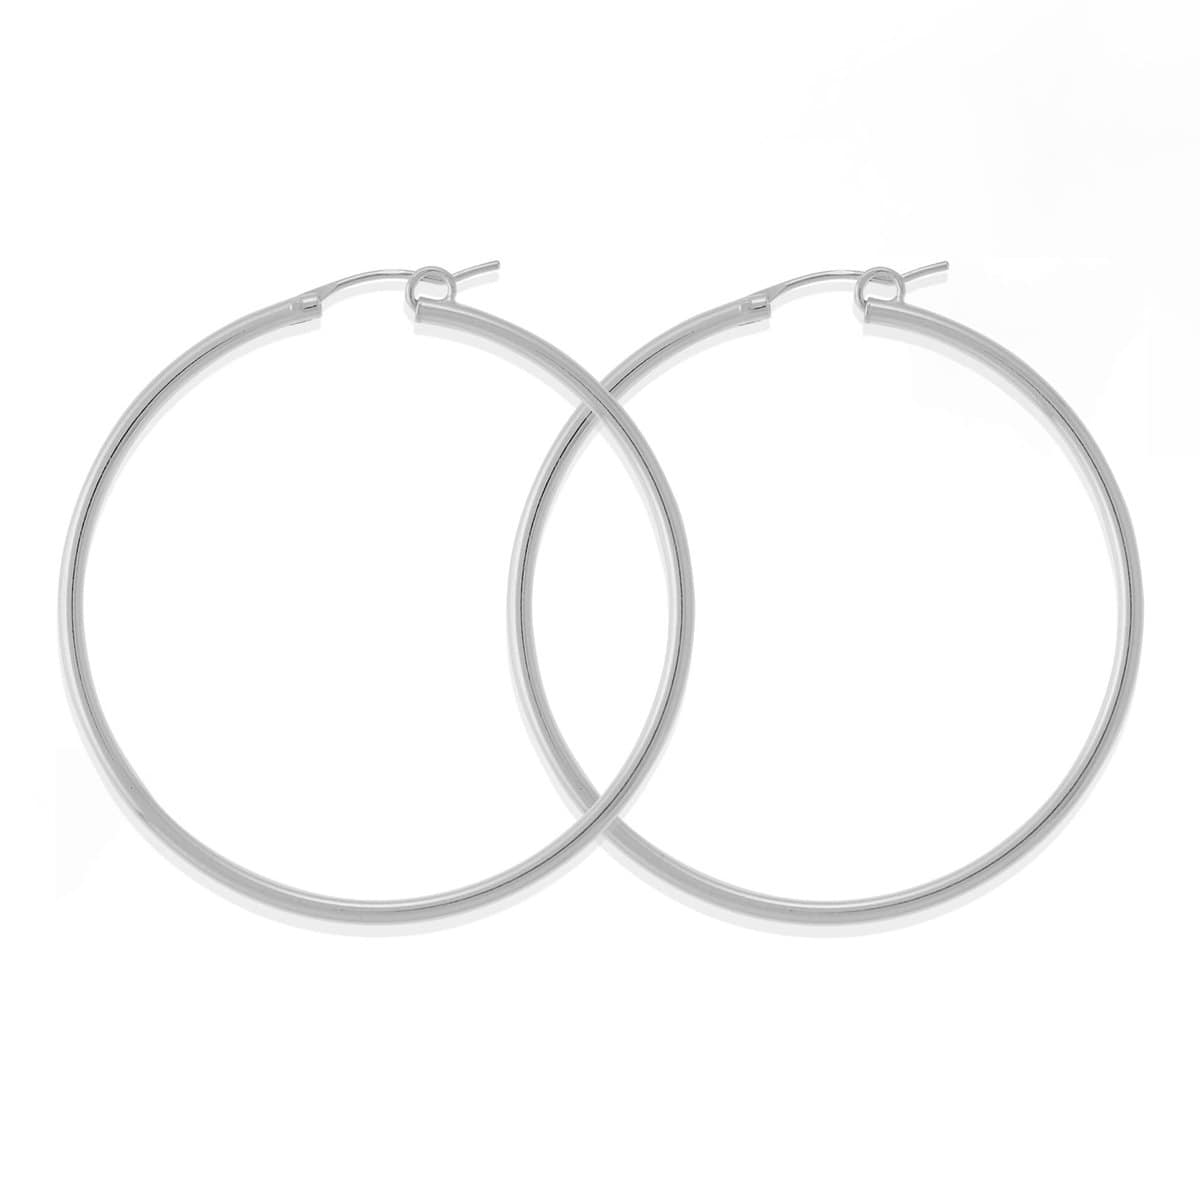 Boma Jewelry Earrings Sterling Silver / 1.9" Belle Hoops